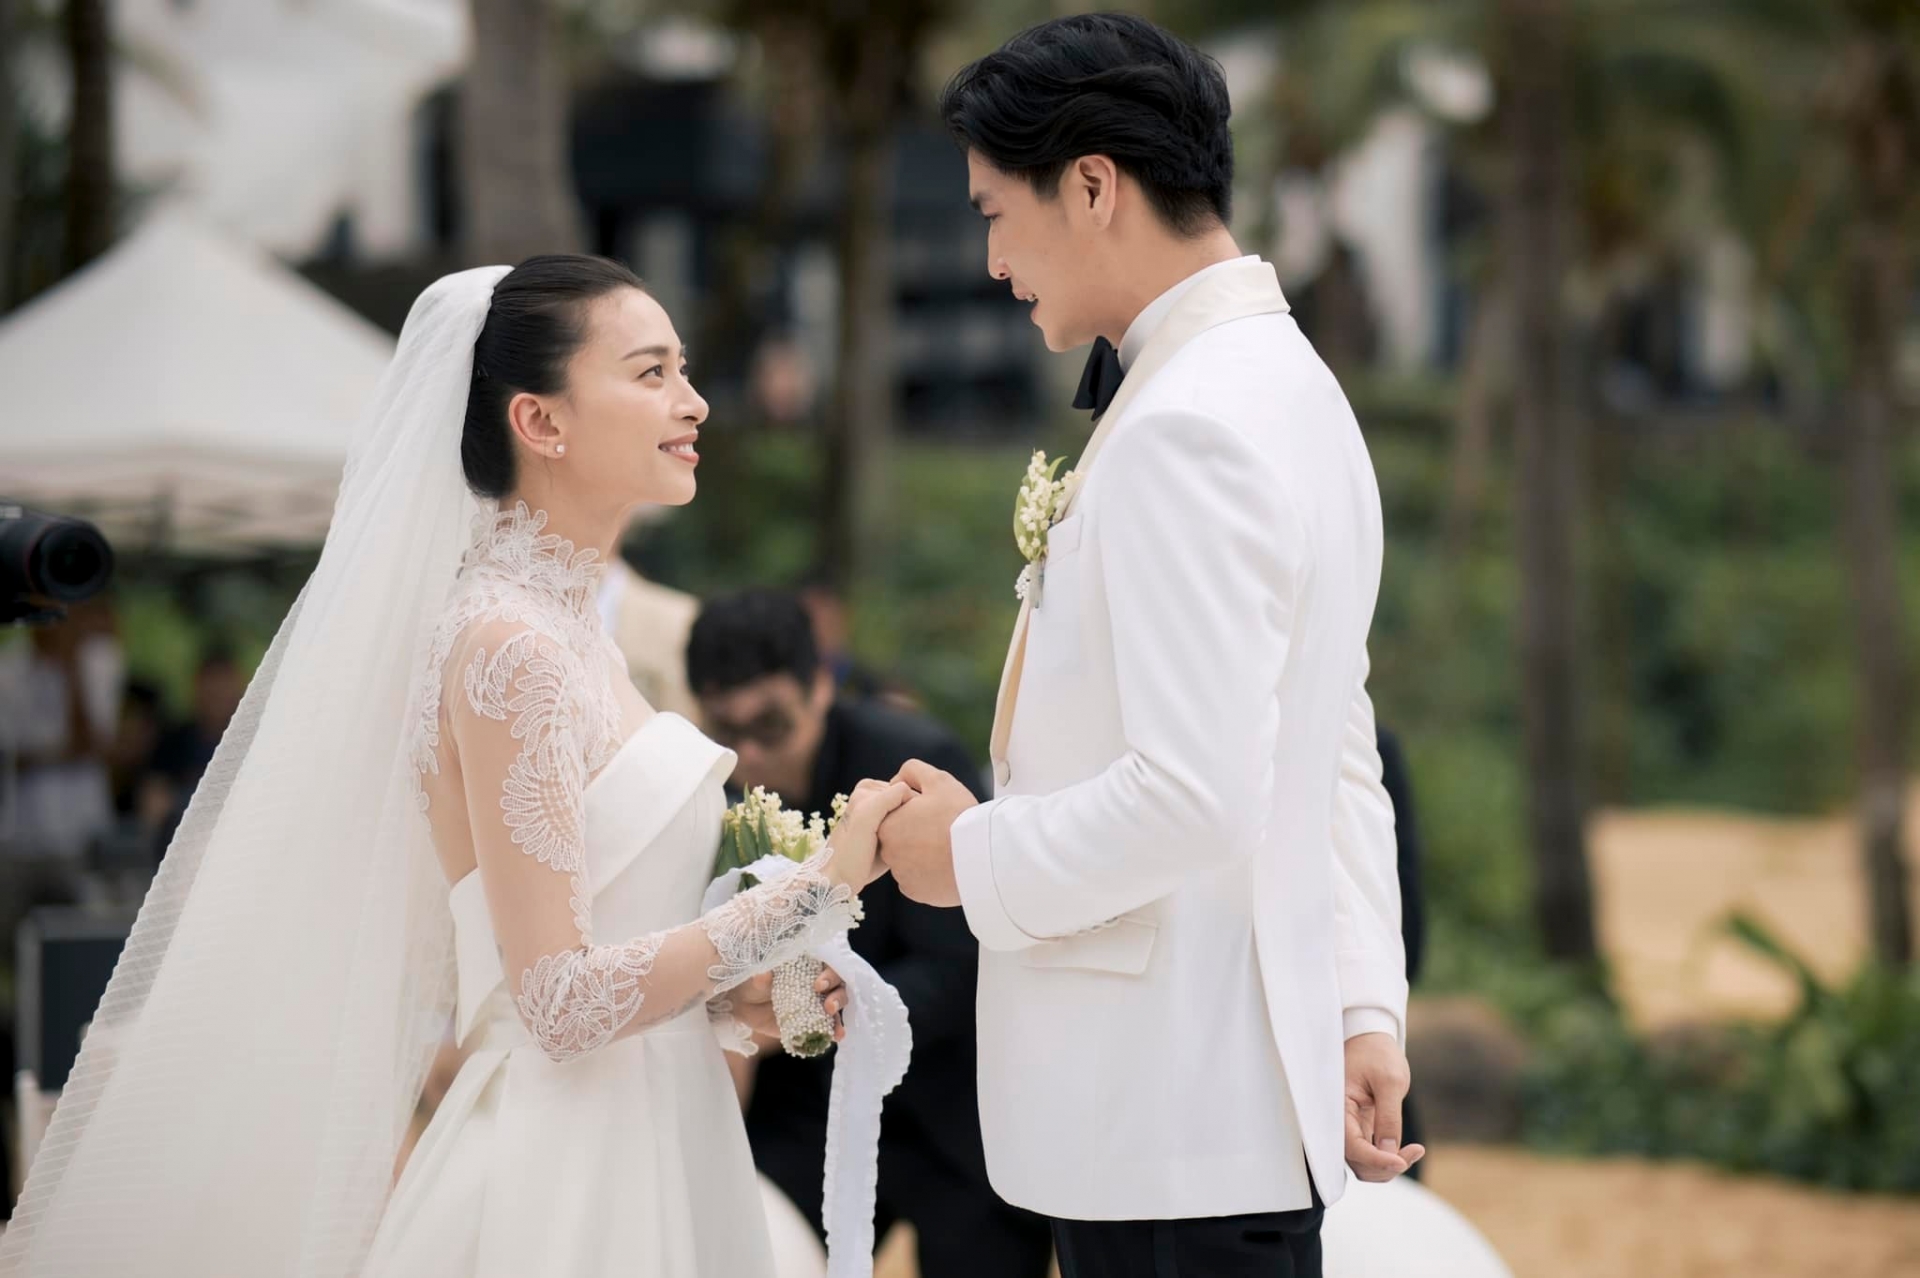 Danh tính người nhận được hoa cưới tại đám cưới Ngô Thanh Vân - Huy Trần - Ảnh 3